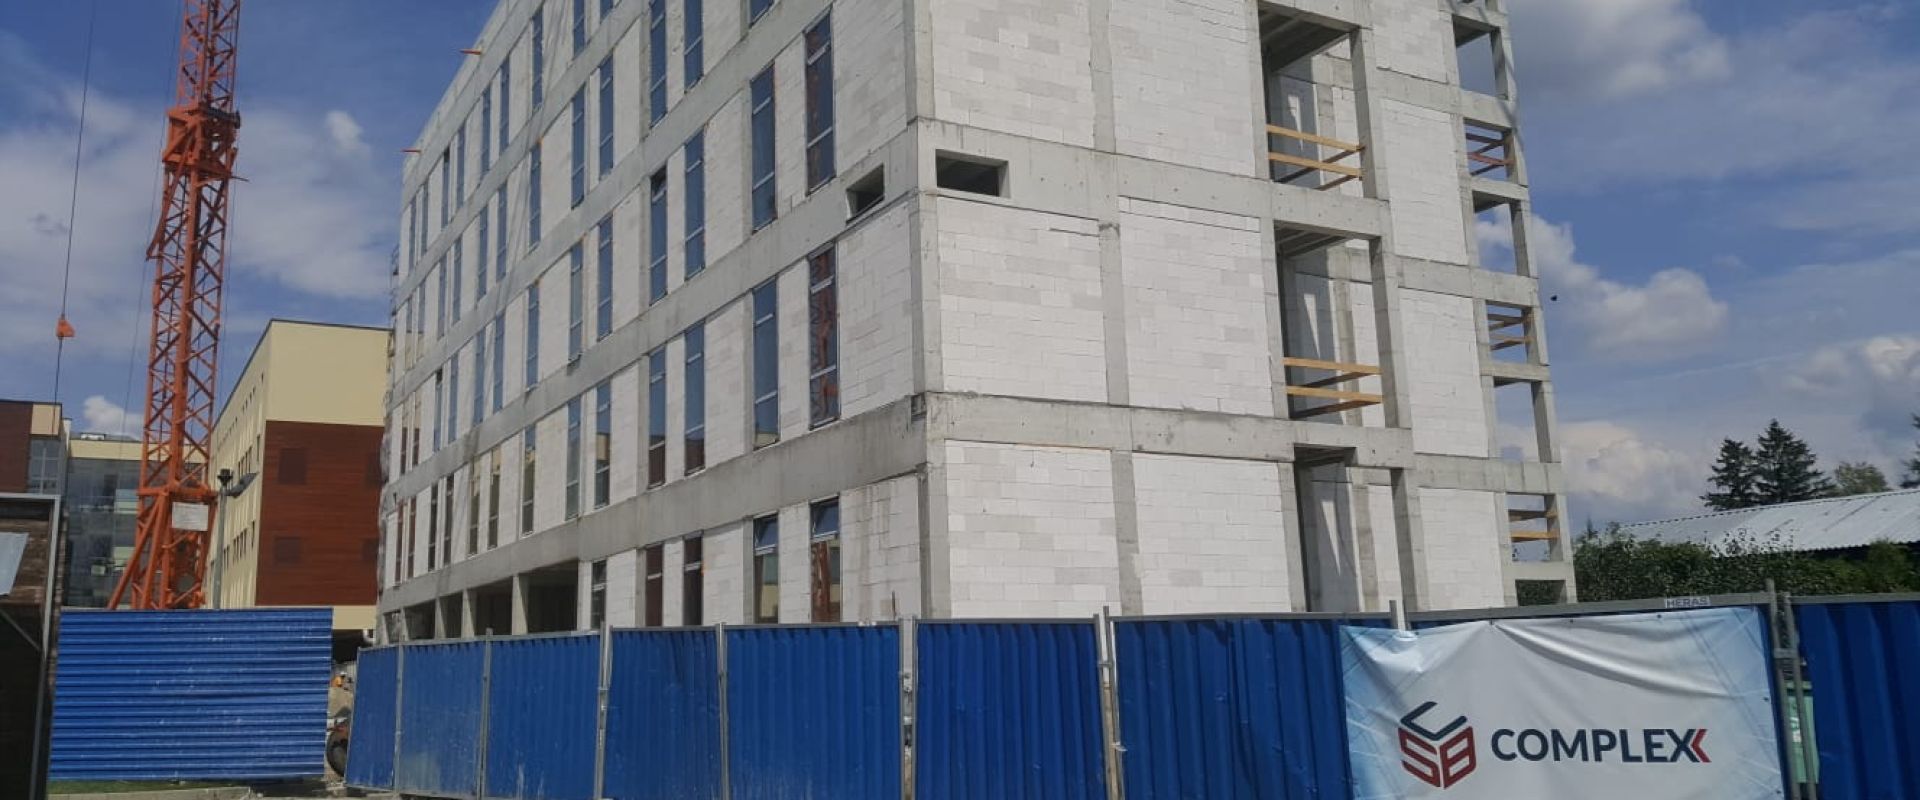 Wykonanie robót stanu surowego otwartego rozbudowy budynku szpitala Pro-Familia w Rzeszowie